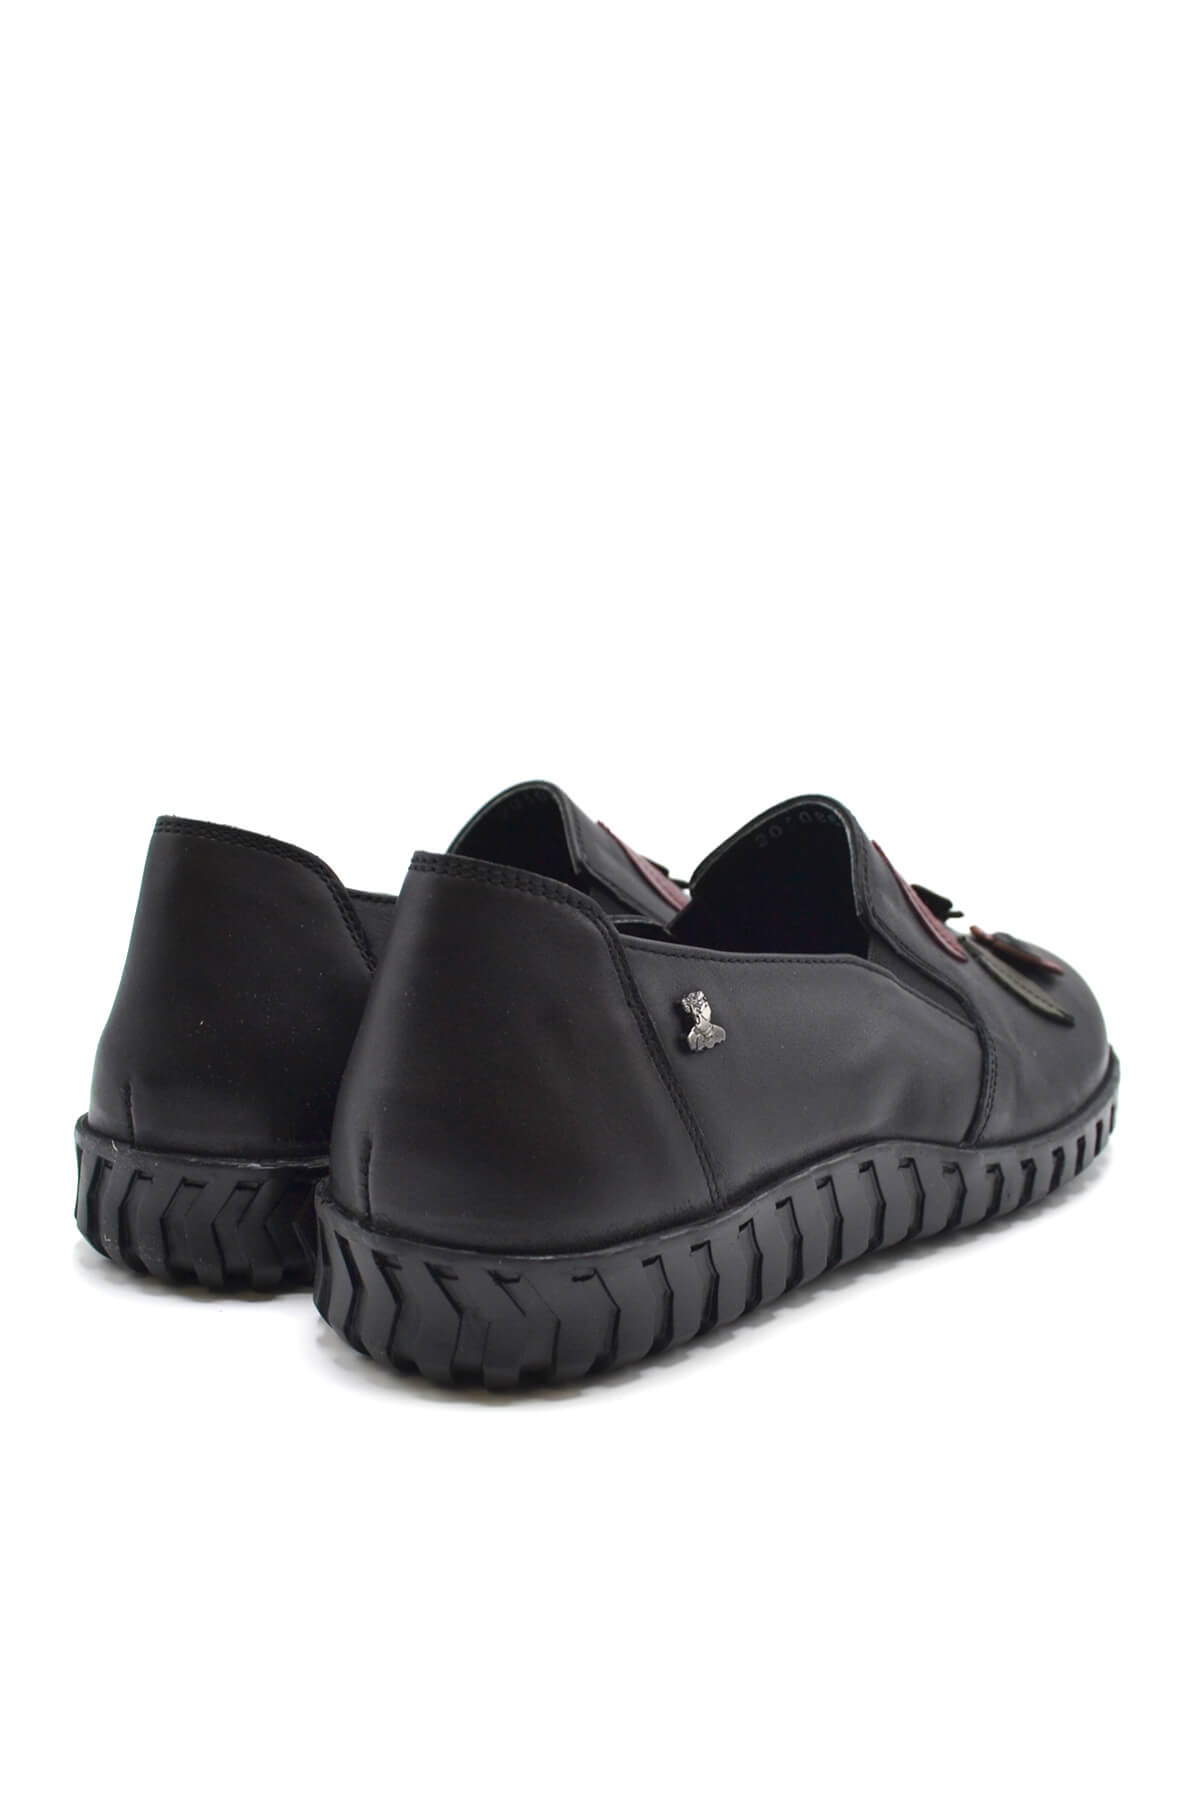 Kadın Comfort Deri Ayakkabı Siyah 2050862K